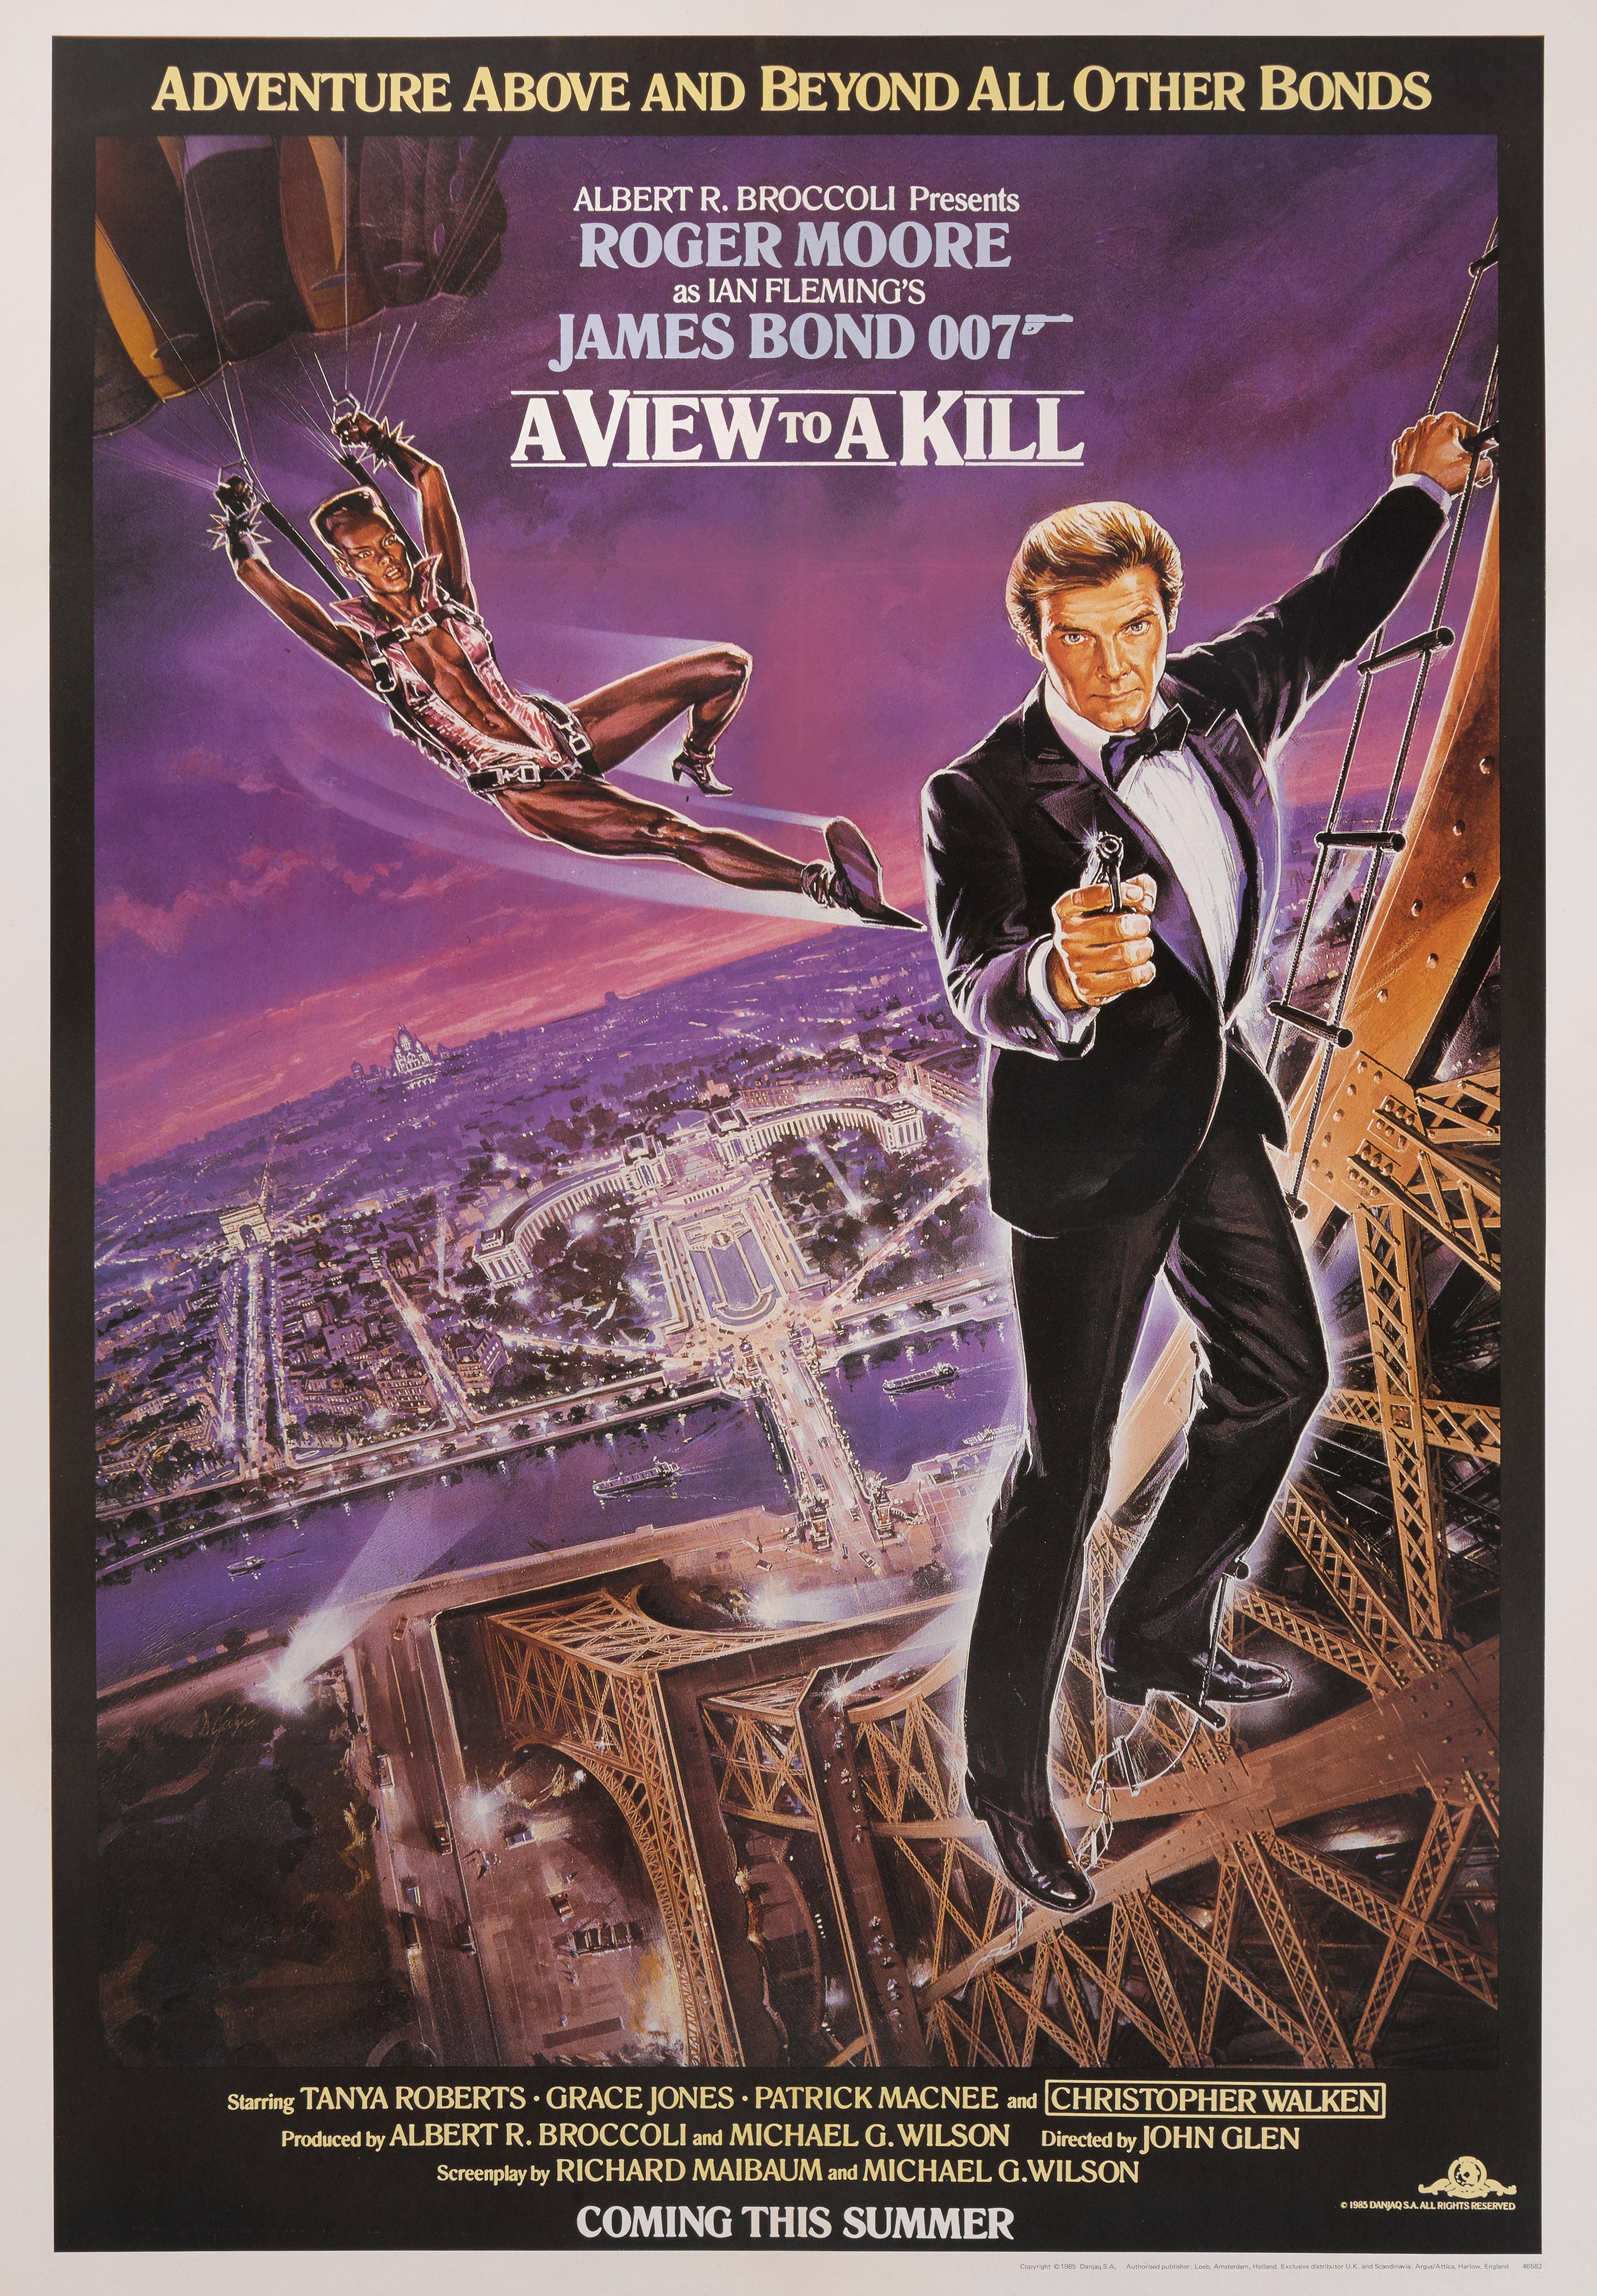 Original US Advance lila Stil Filmplakat für Roger Moore und Grace Jones 1985 Bond Film.
Die Regie bei diesem Film führte John Glen.
Dieses Plakat ist die Erhaltung Leinen zurück Es wäre in einem starken Rohr gerollt und versendet von Federal